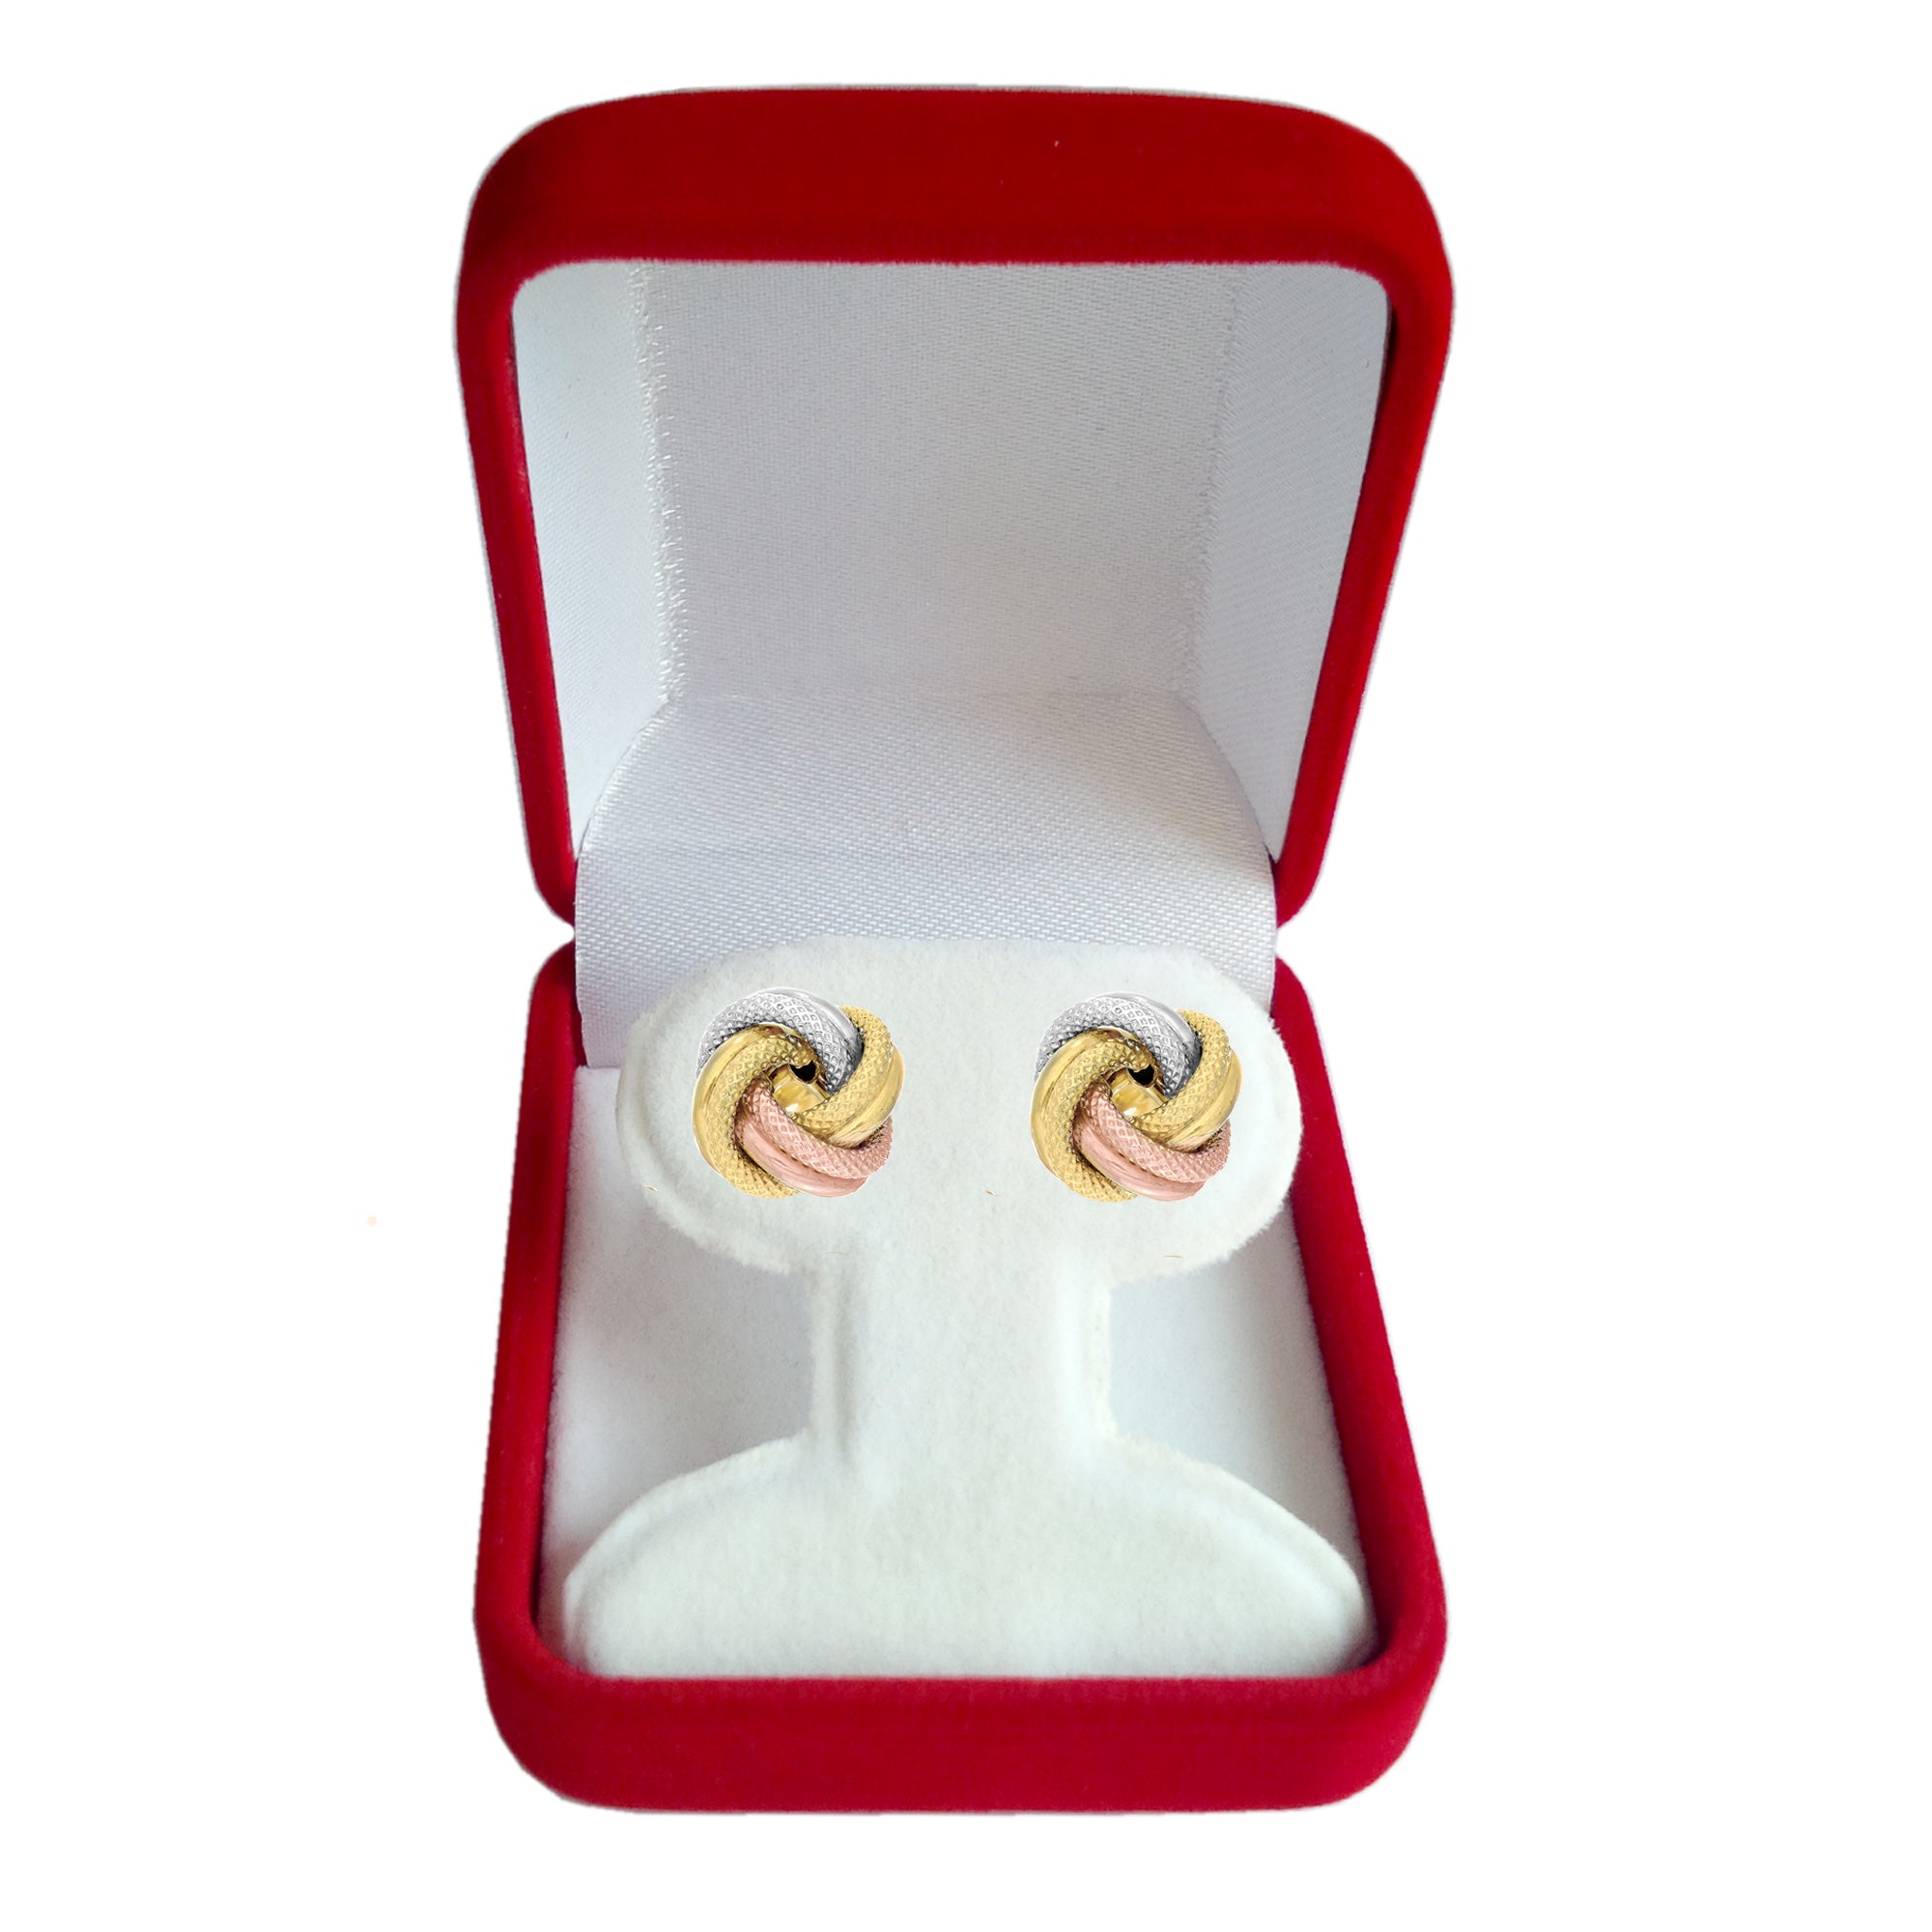 Orecchini a bottone con nodo d'amore tricolore 14k testurizzati e lucenti, gioielli di design da 10 mm per uomini e donne